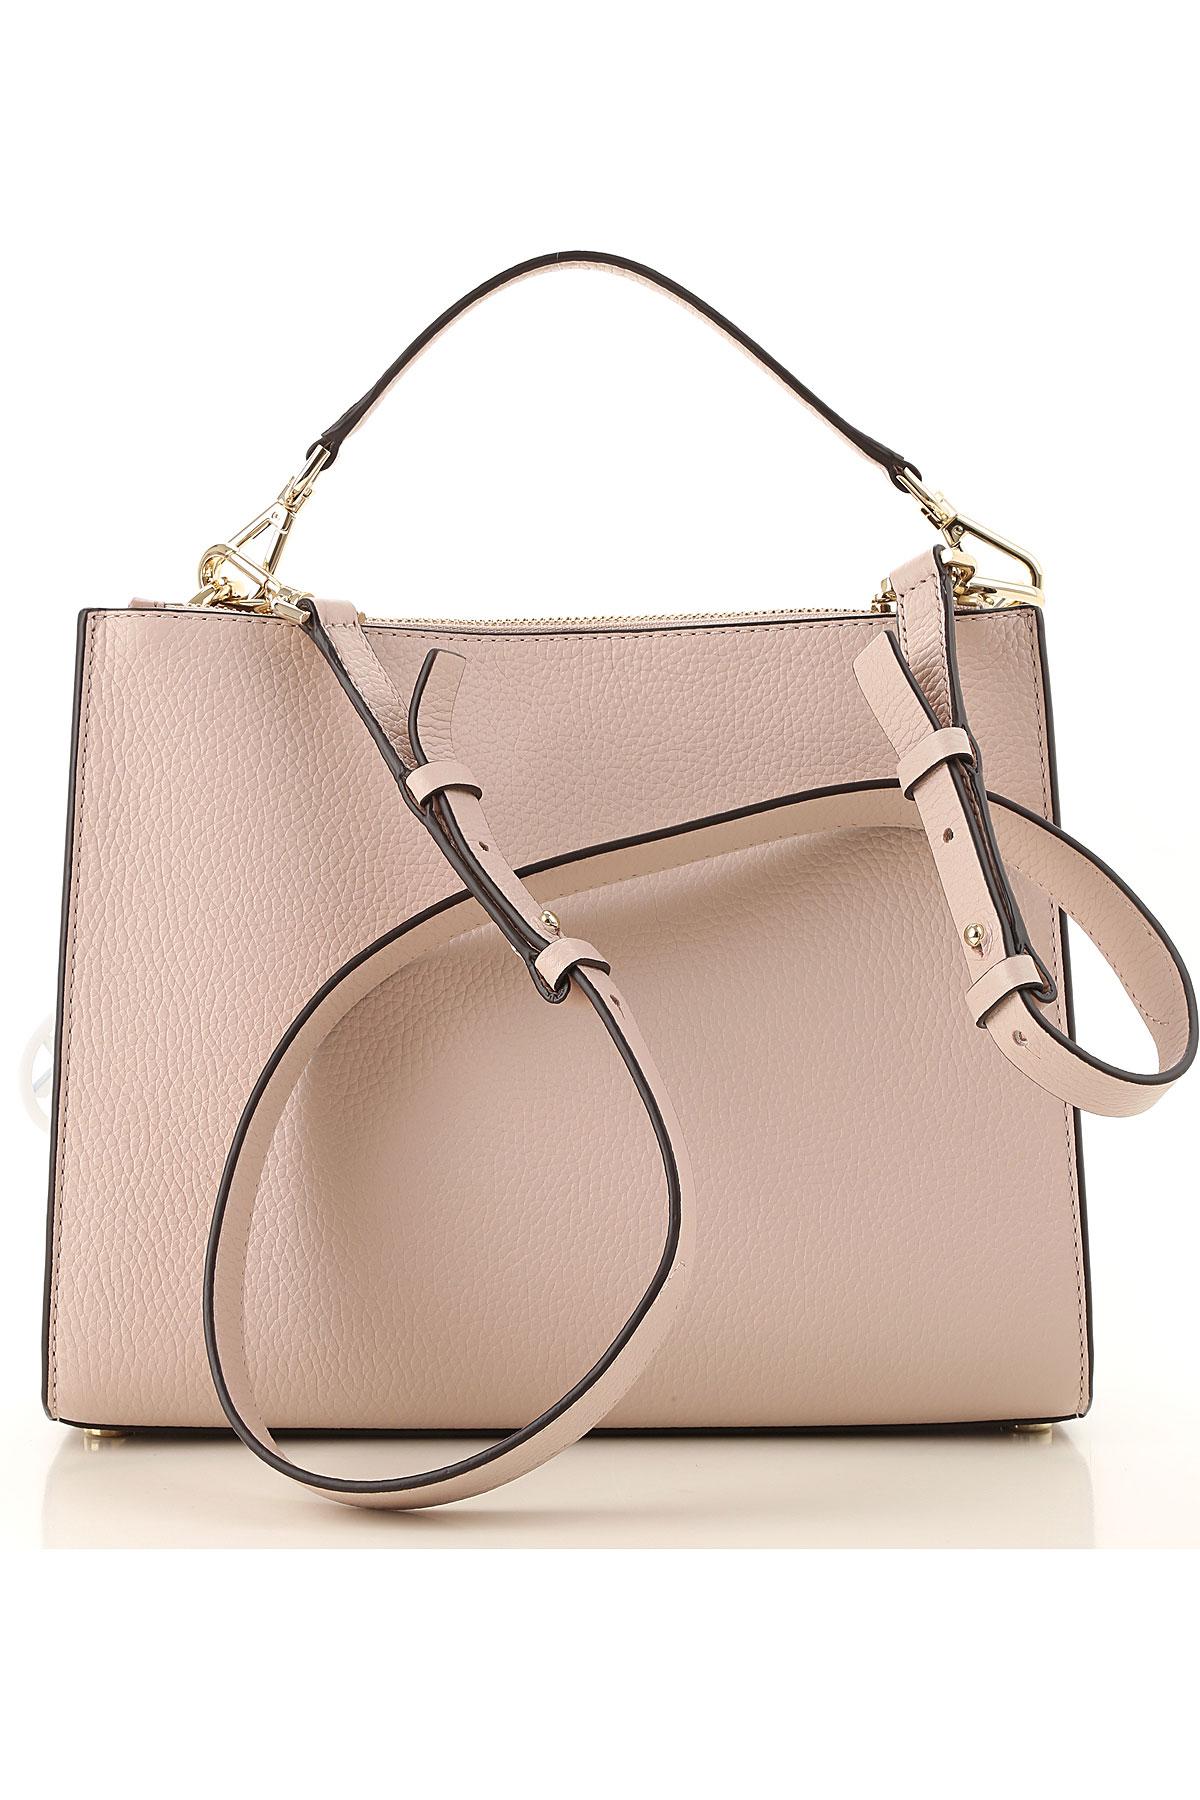 Michael Kors Shoulder Bag For Women On Sale in Pink - Lyst